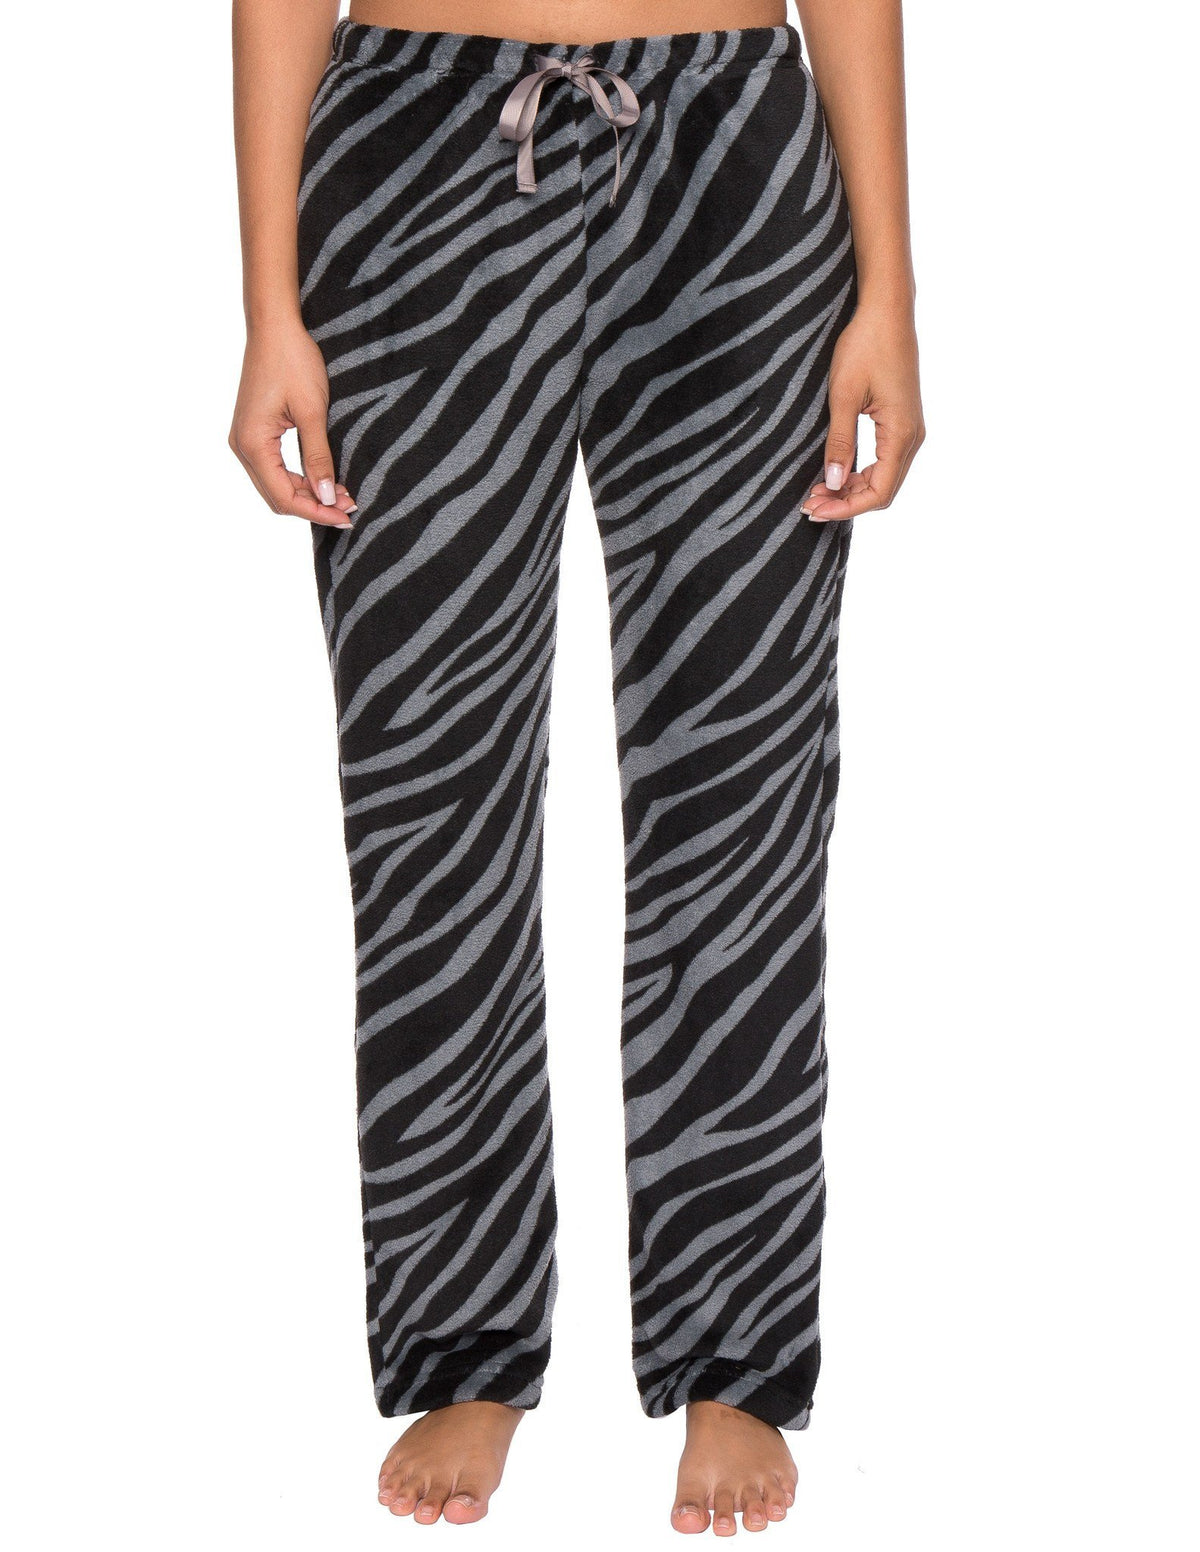 Women's Coral Fleece Plush Lounge Pants - Zebra - Charcoal/Black – Preston  Outlet Store